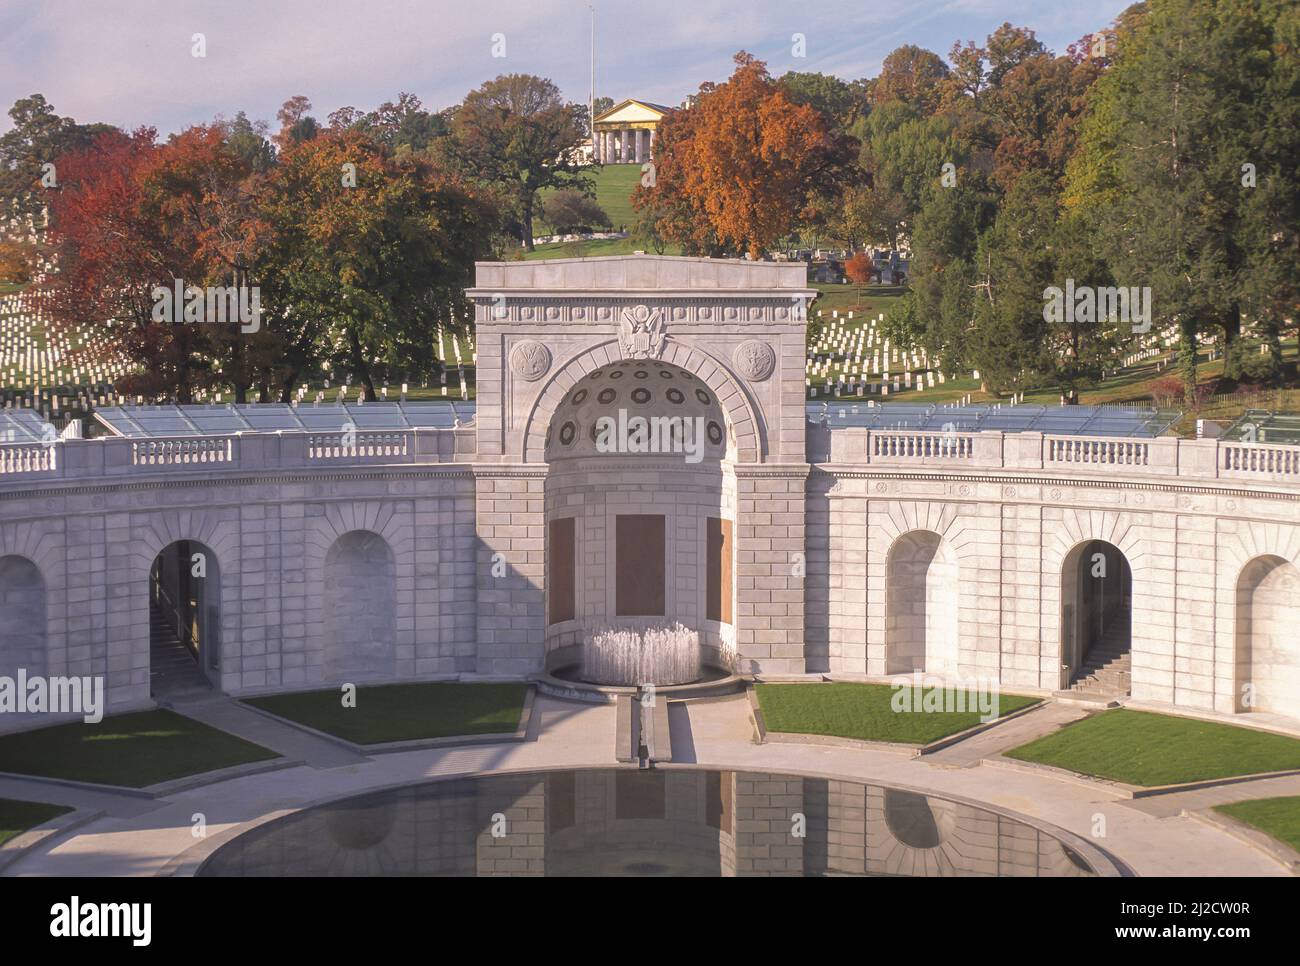 ARLINGTON, VIRGINIA, USA - le mémorial des femmes dans le service militaire de l'Amérique, également connu sous le nom de mémorial des femmes militaires, dans le cimetière national d'Arlington. Banque D'Images